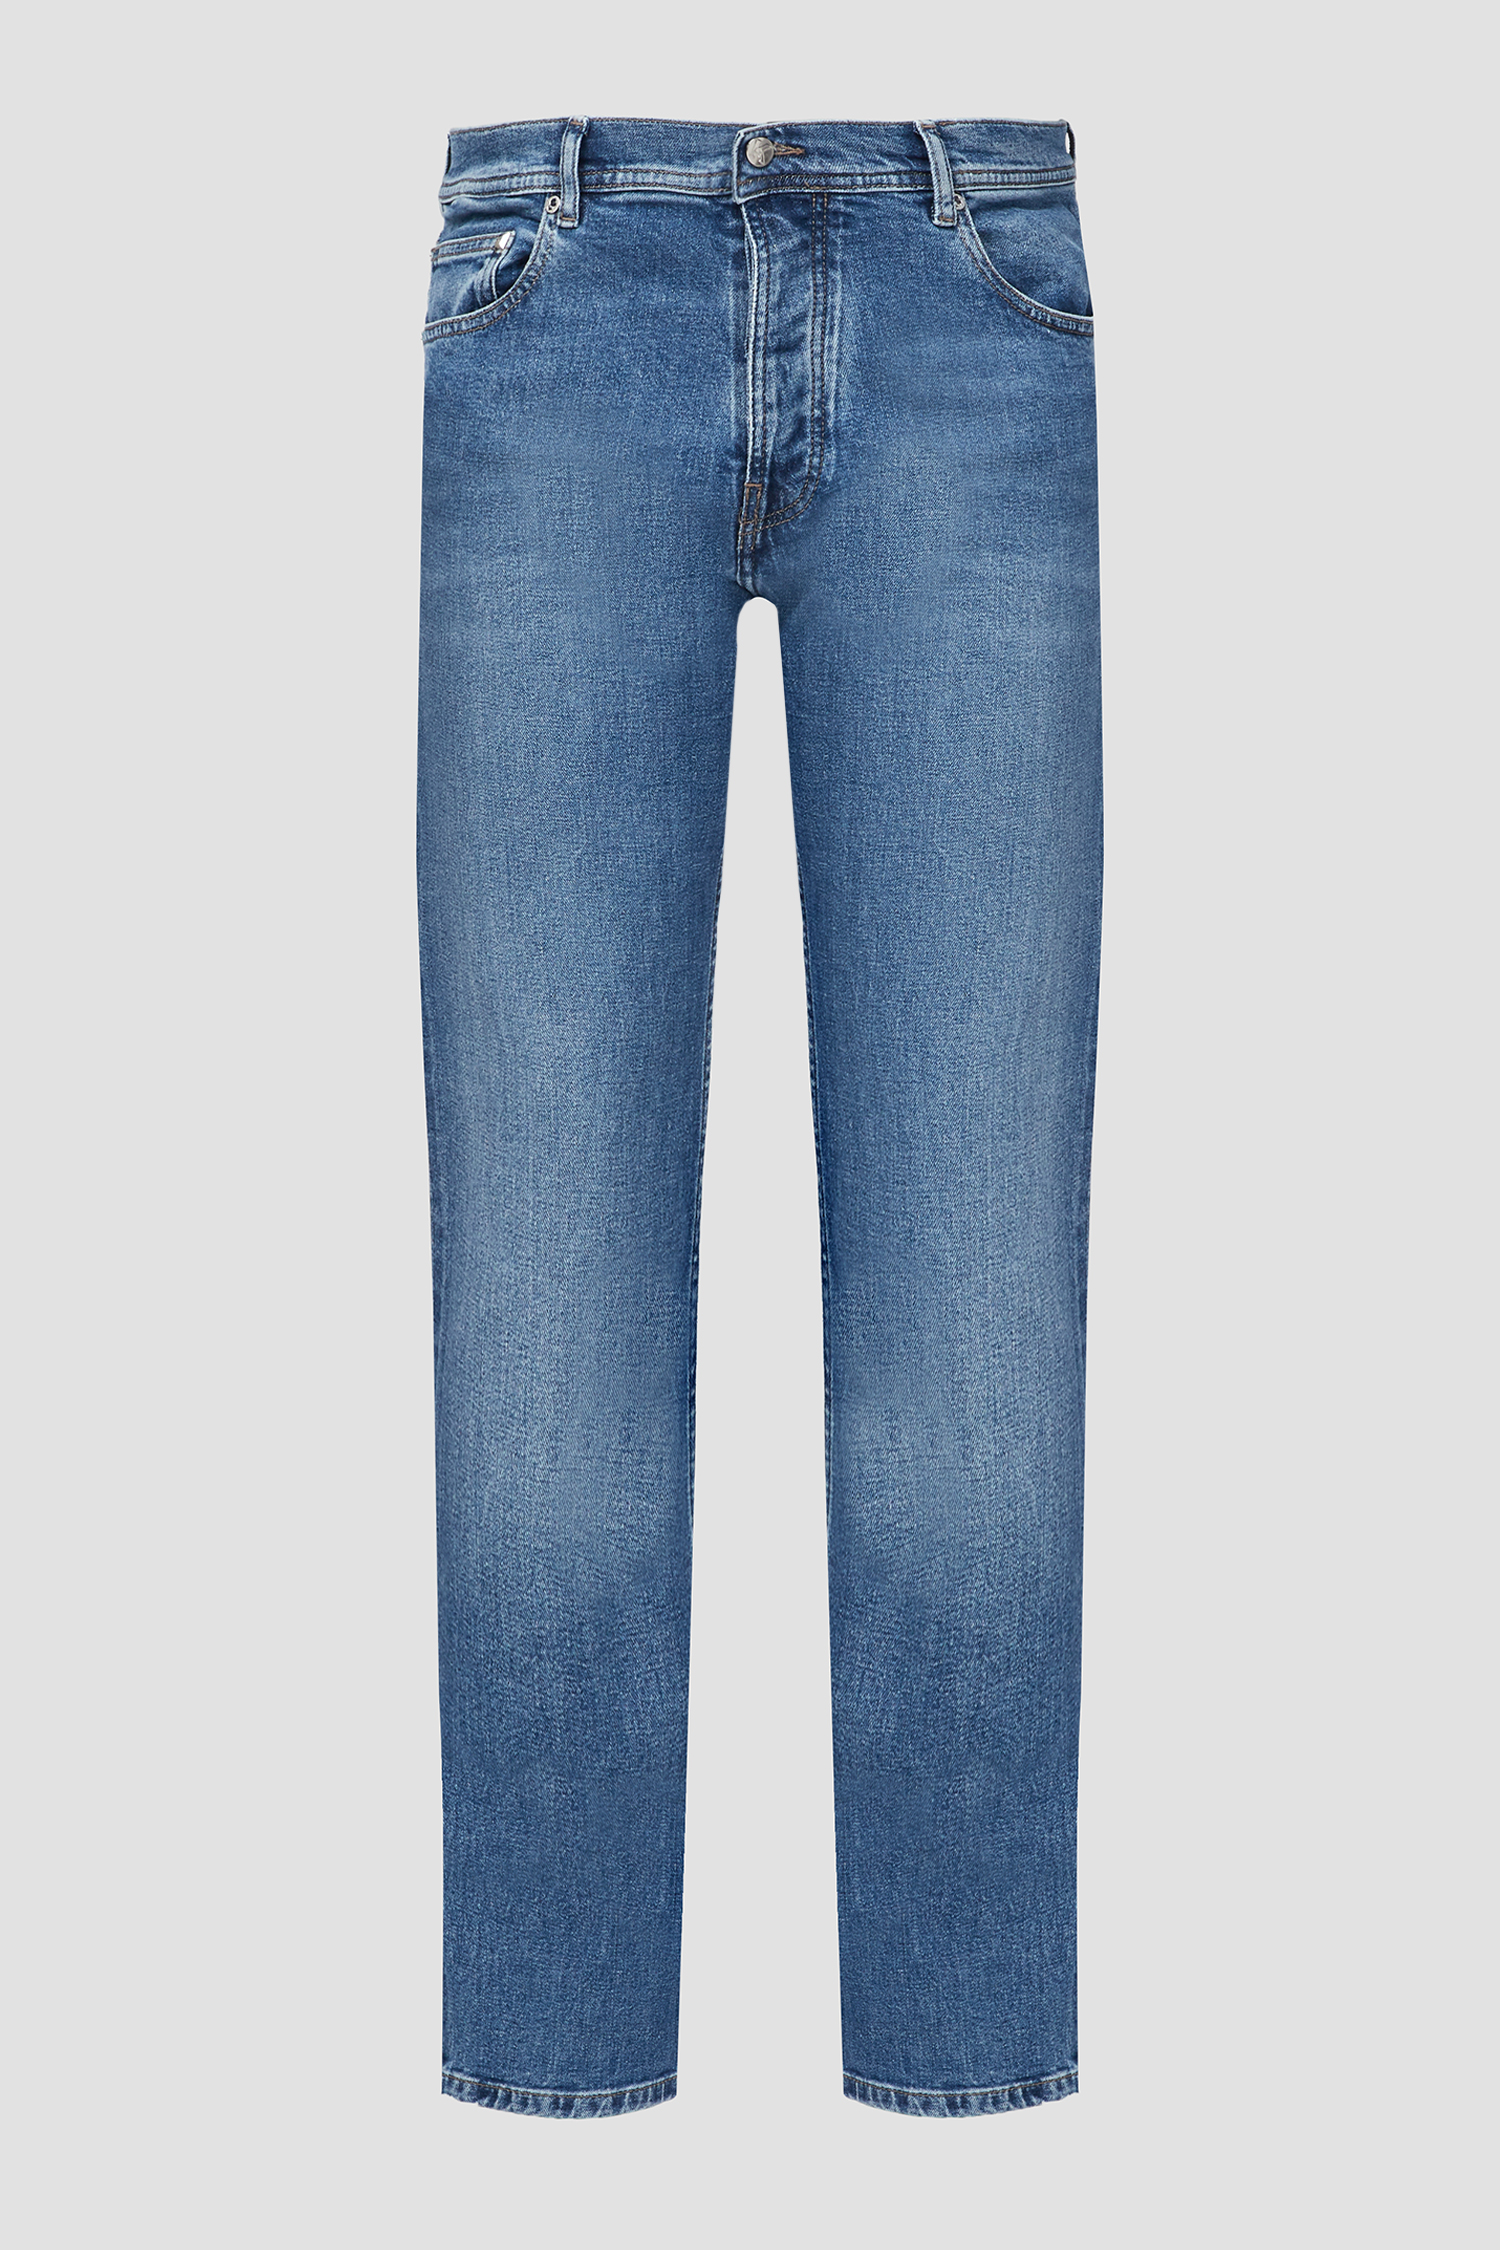 Чоловічі сині джинси Karl Lagerfeld 532854.265855;670